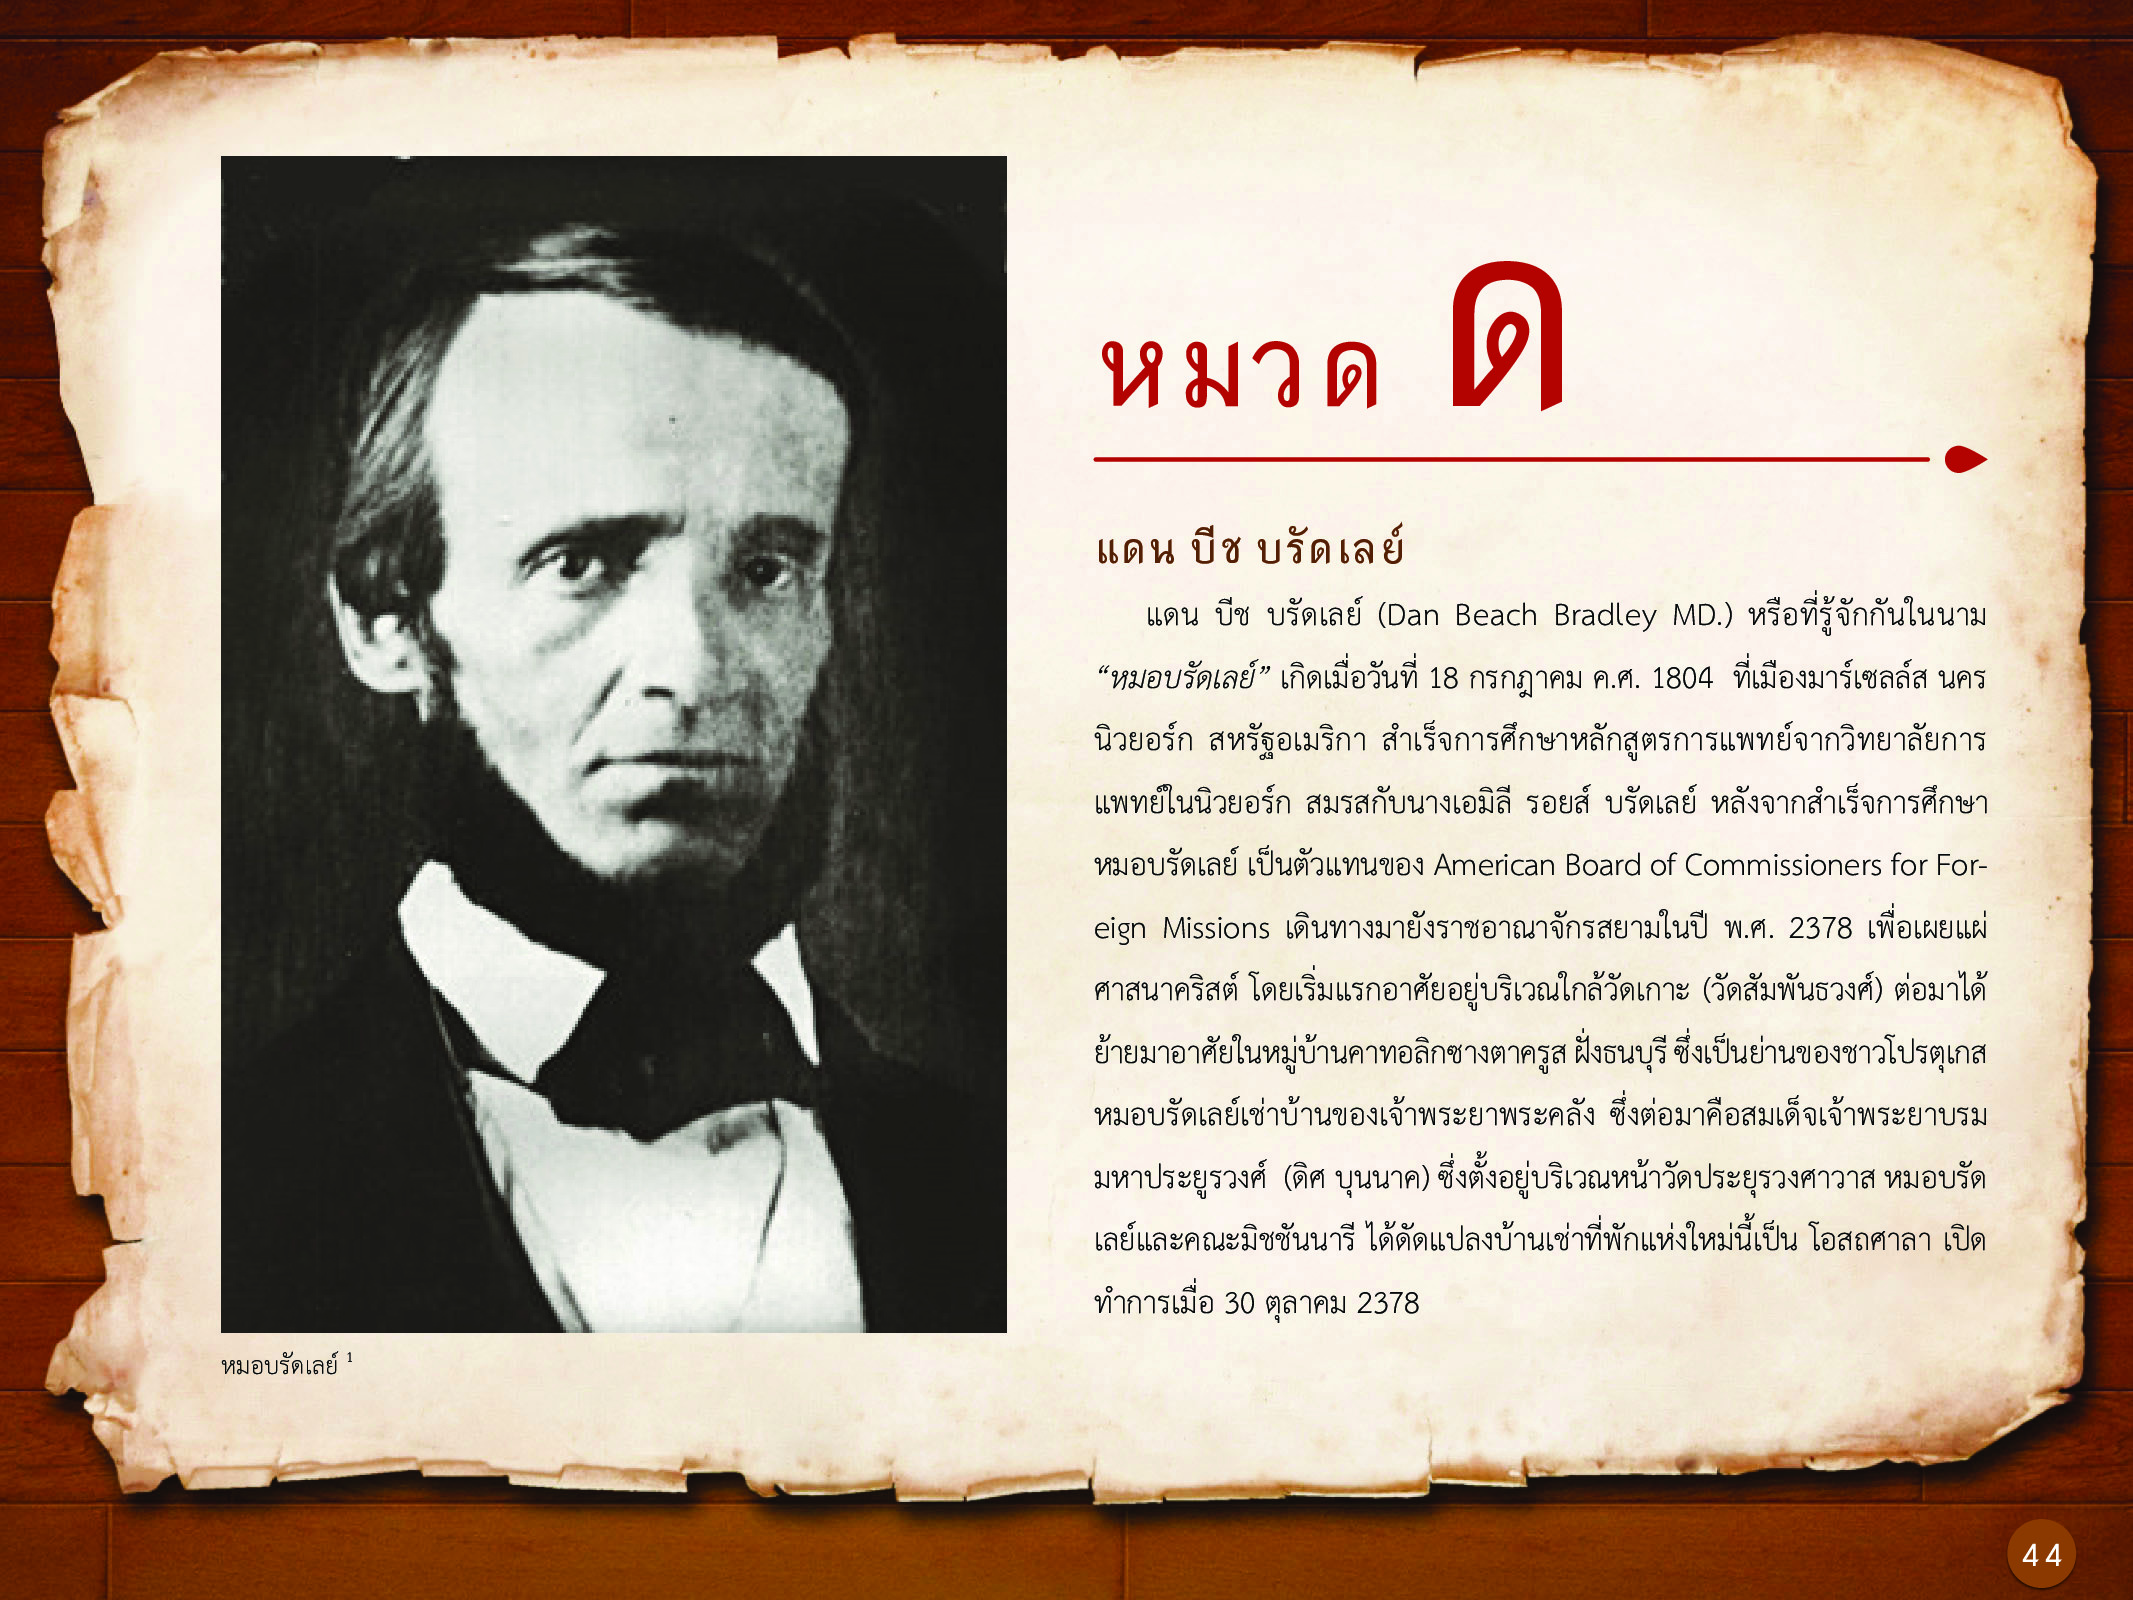 ประวัติศาสตร์กรุงธนบุรี ./images/history_dhonburi/44.jpg